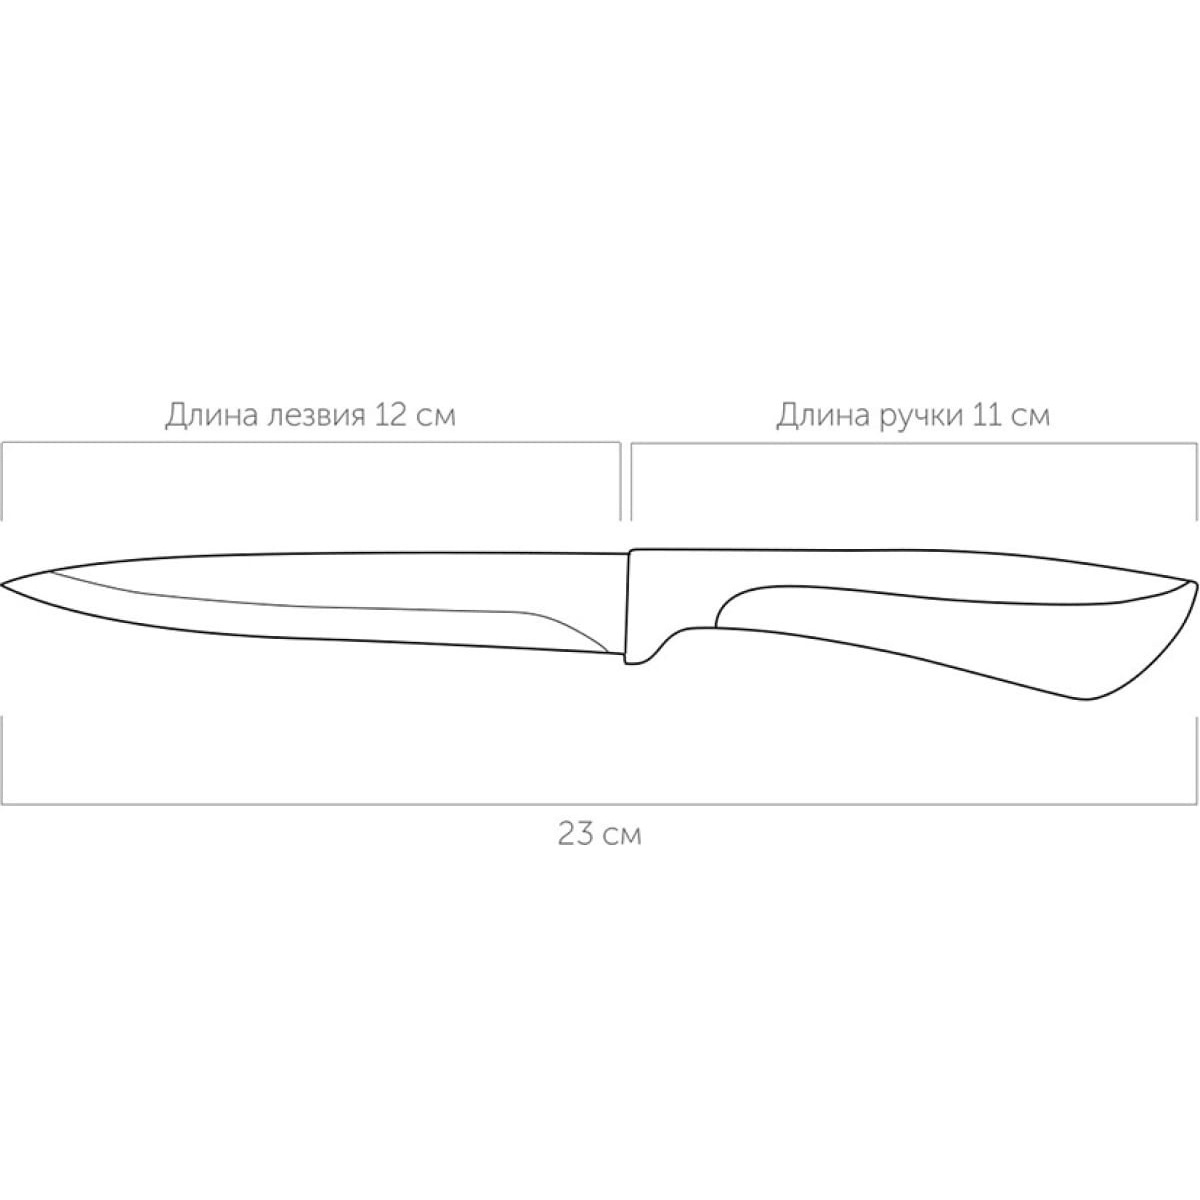 Нож универсальный Nadoba jana. 12см (723113), цвет зеленый - фото 4